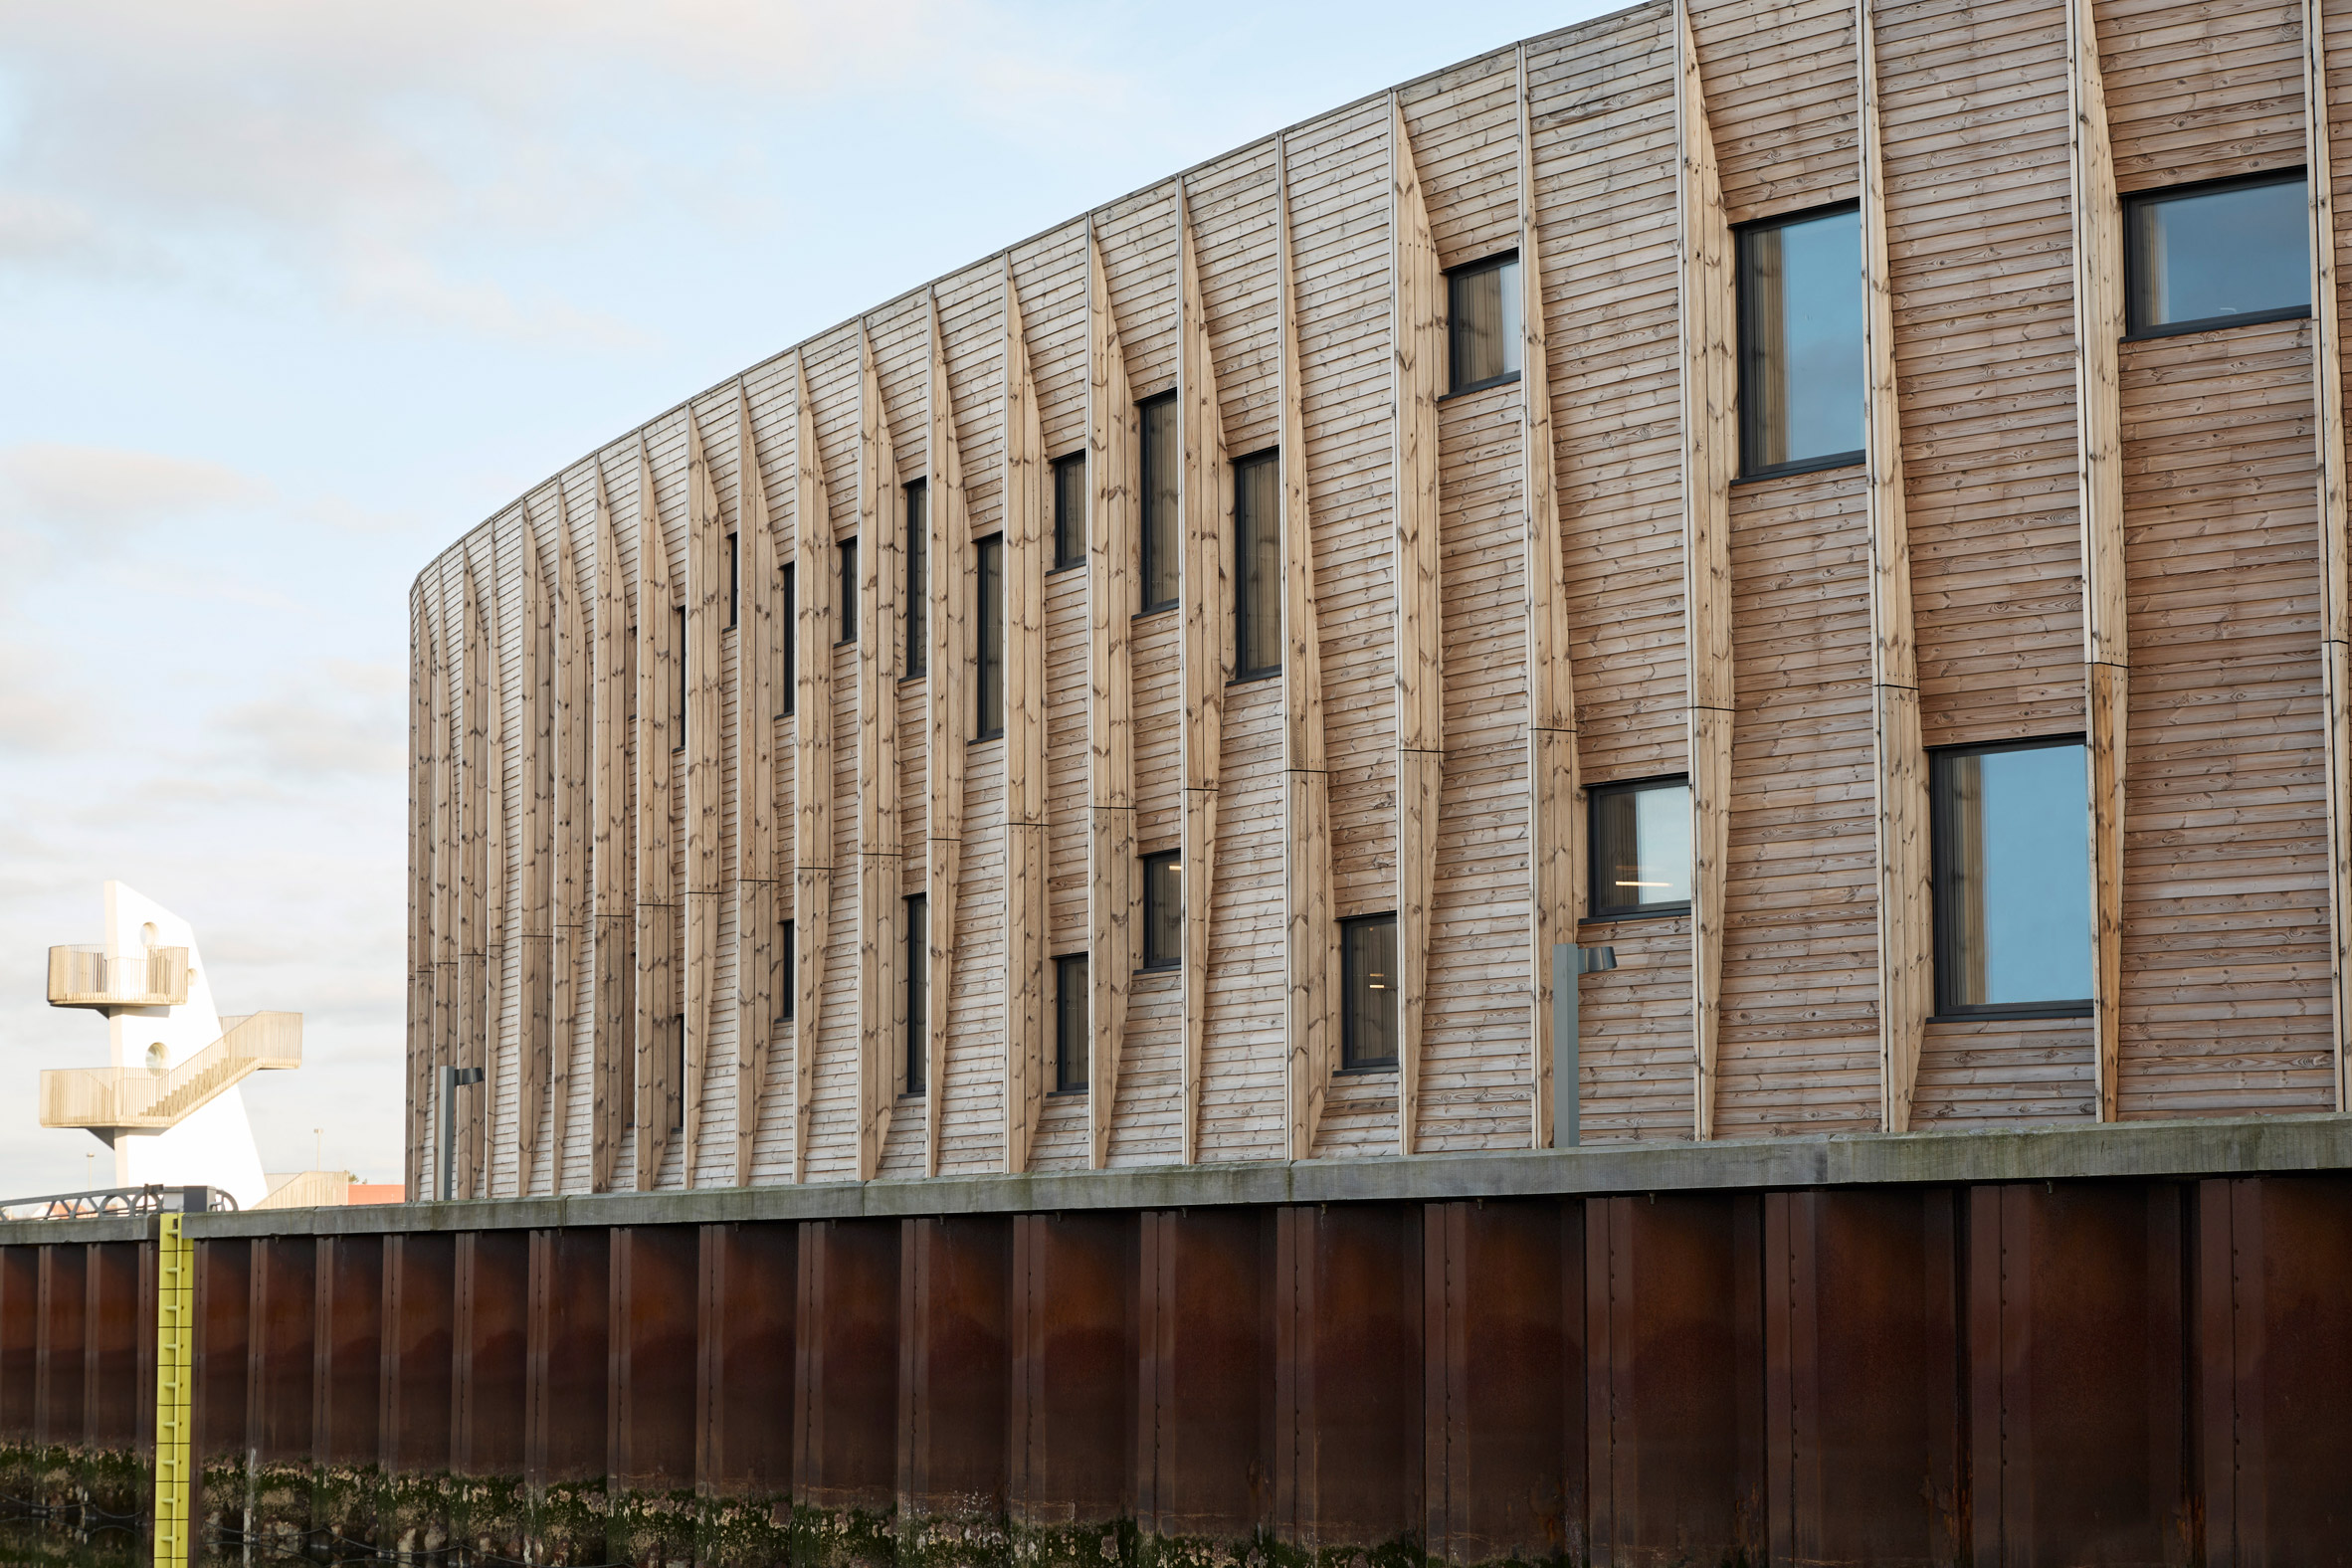 Wood-clad building in Denmark by Snøhetta and WERK Arkitekter